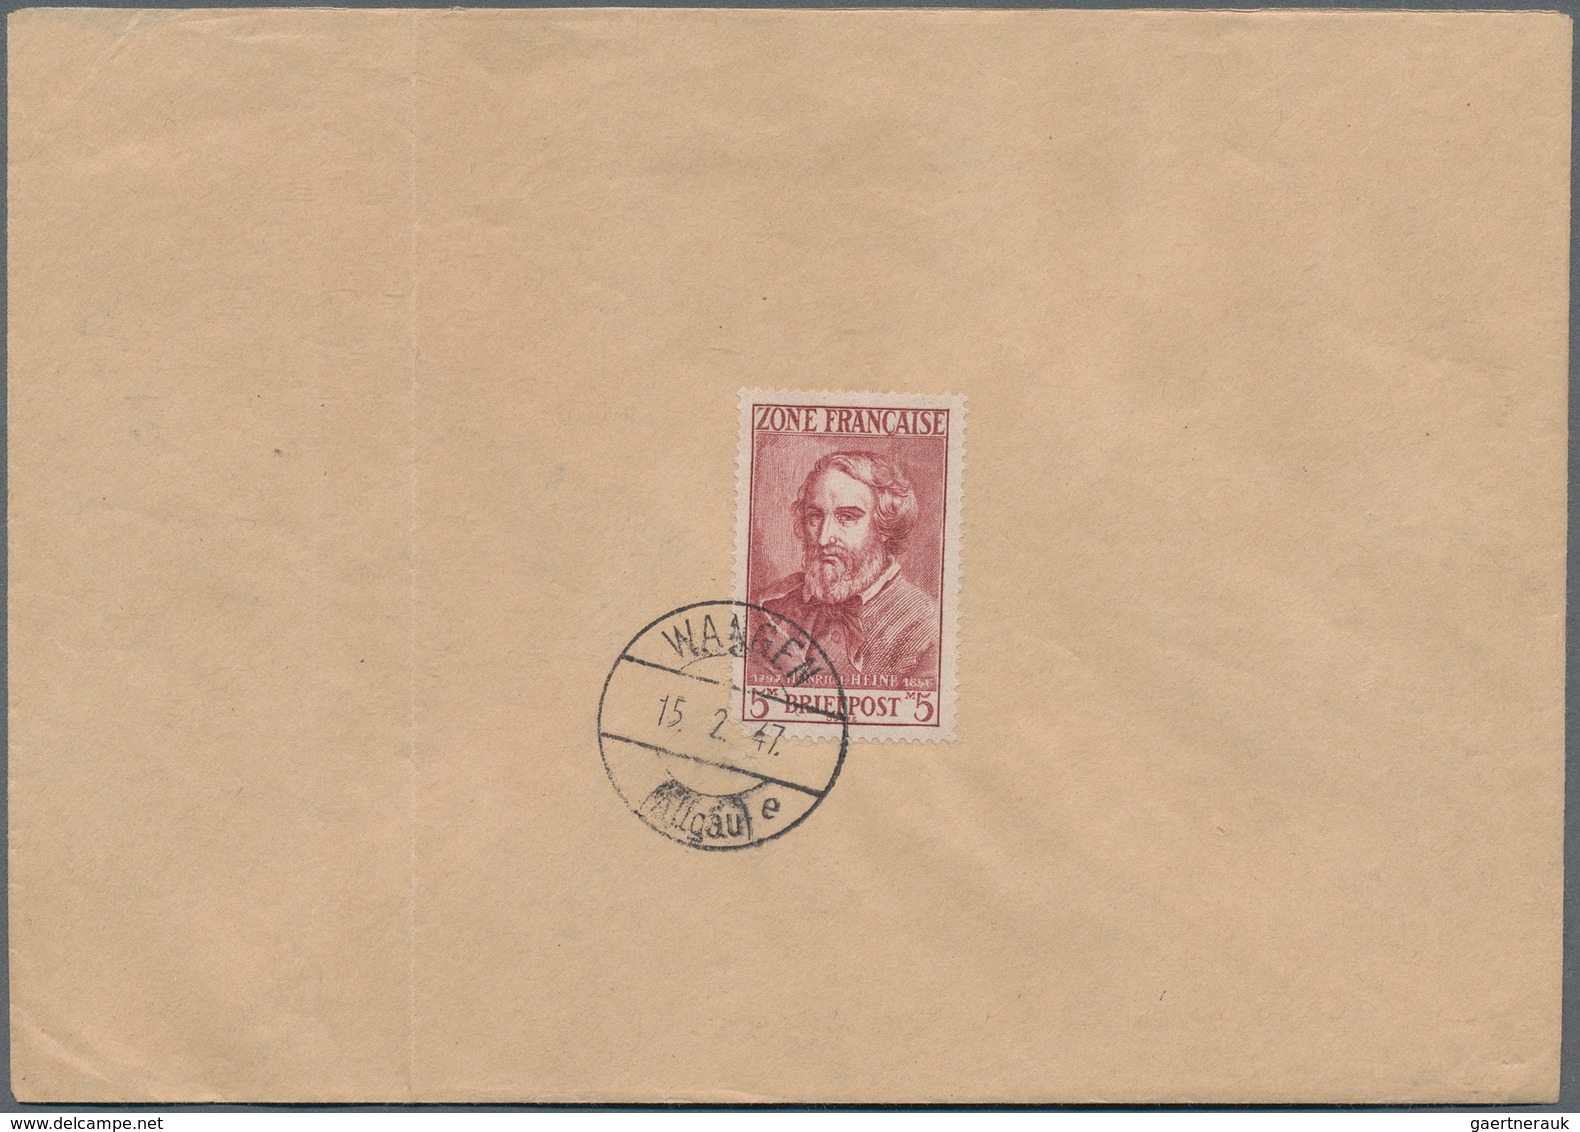 32576 Französische Zone: 1946/1949, vielseitige Partie von ca. 150 Briefen und Karten, meist gelaufene Pos